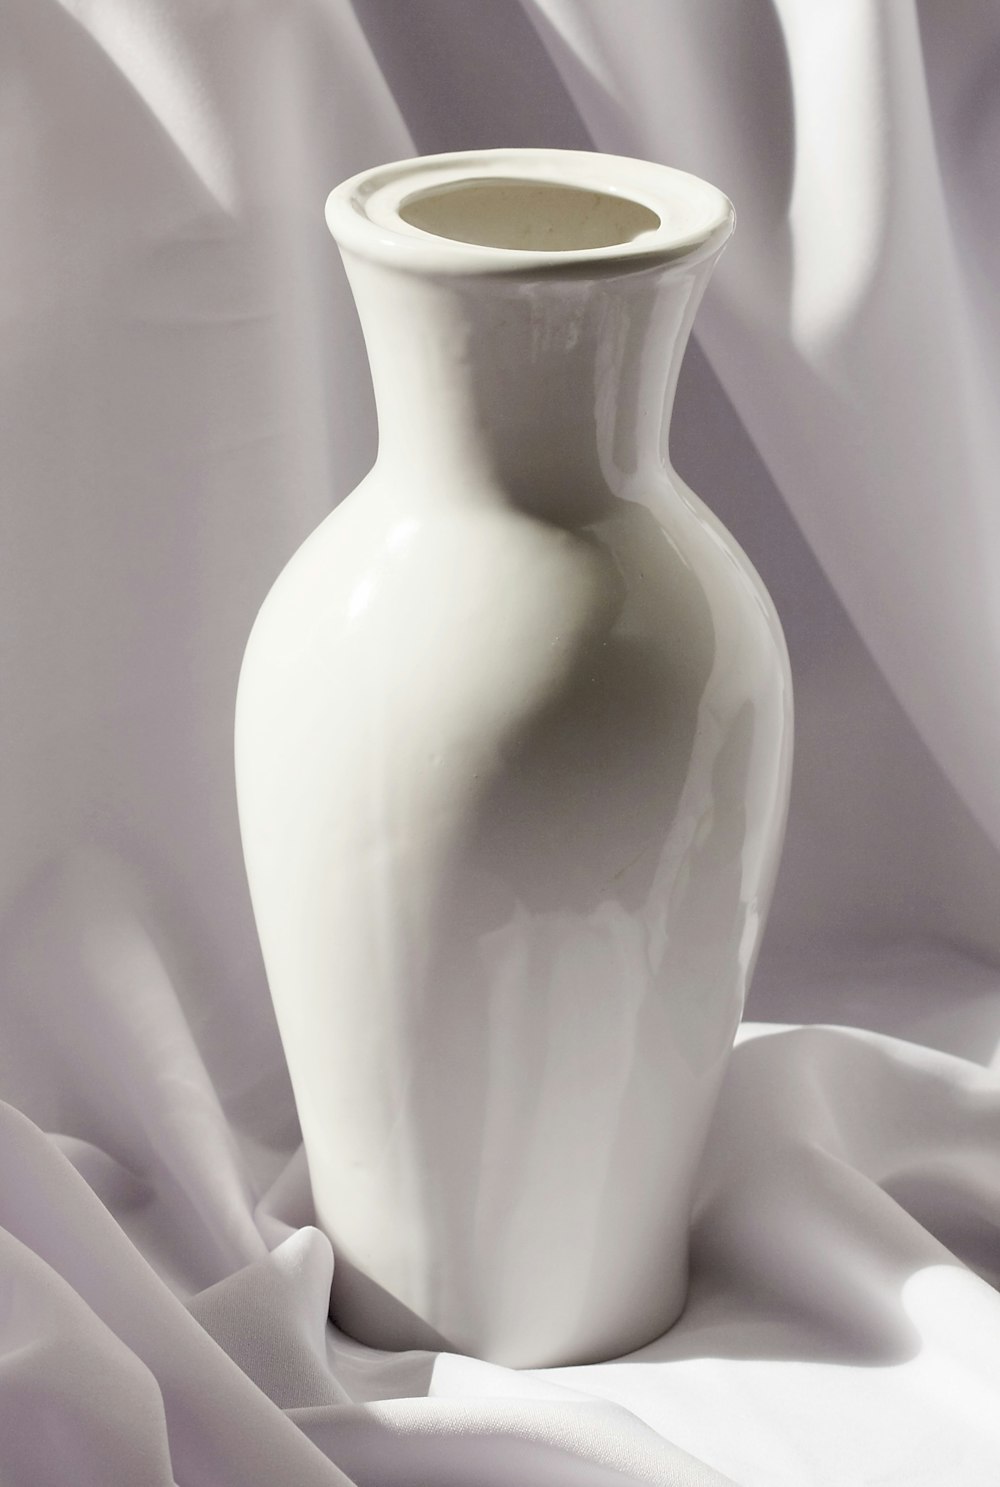 Vase en céramique blanche sur textile blanc